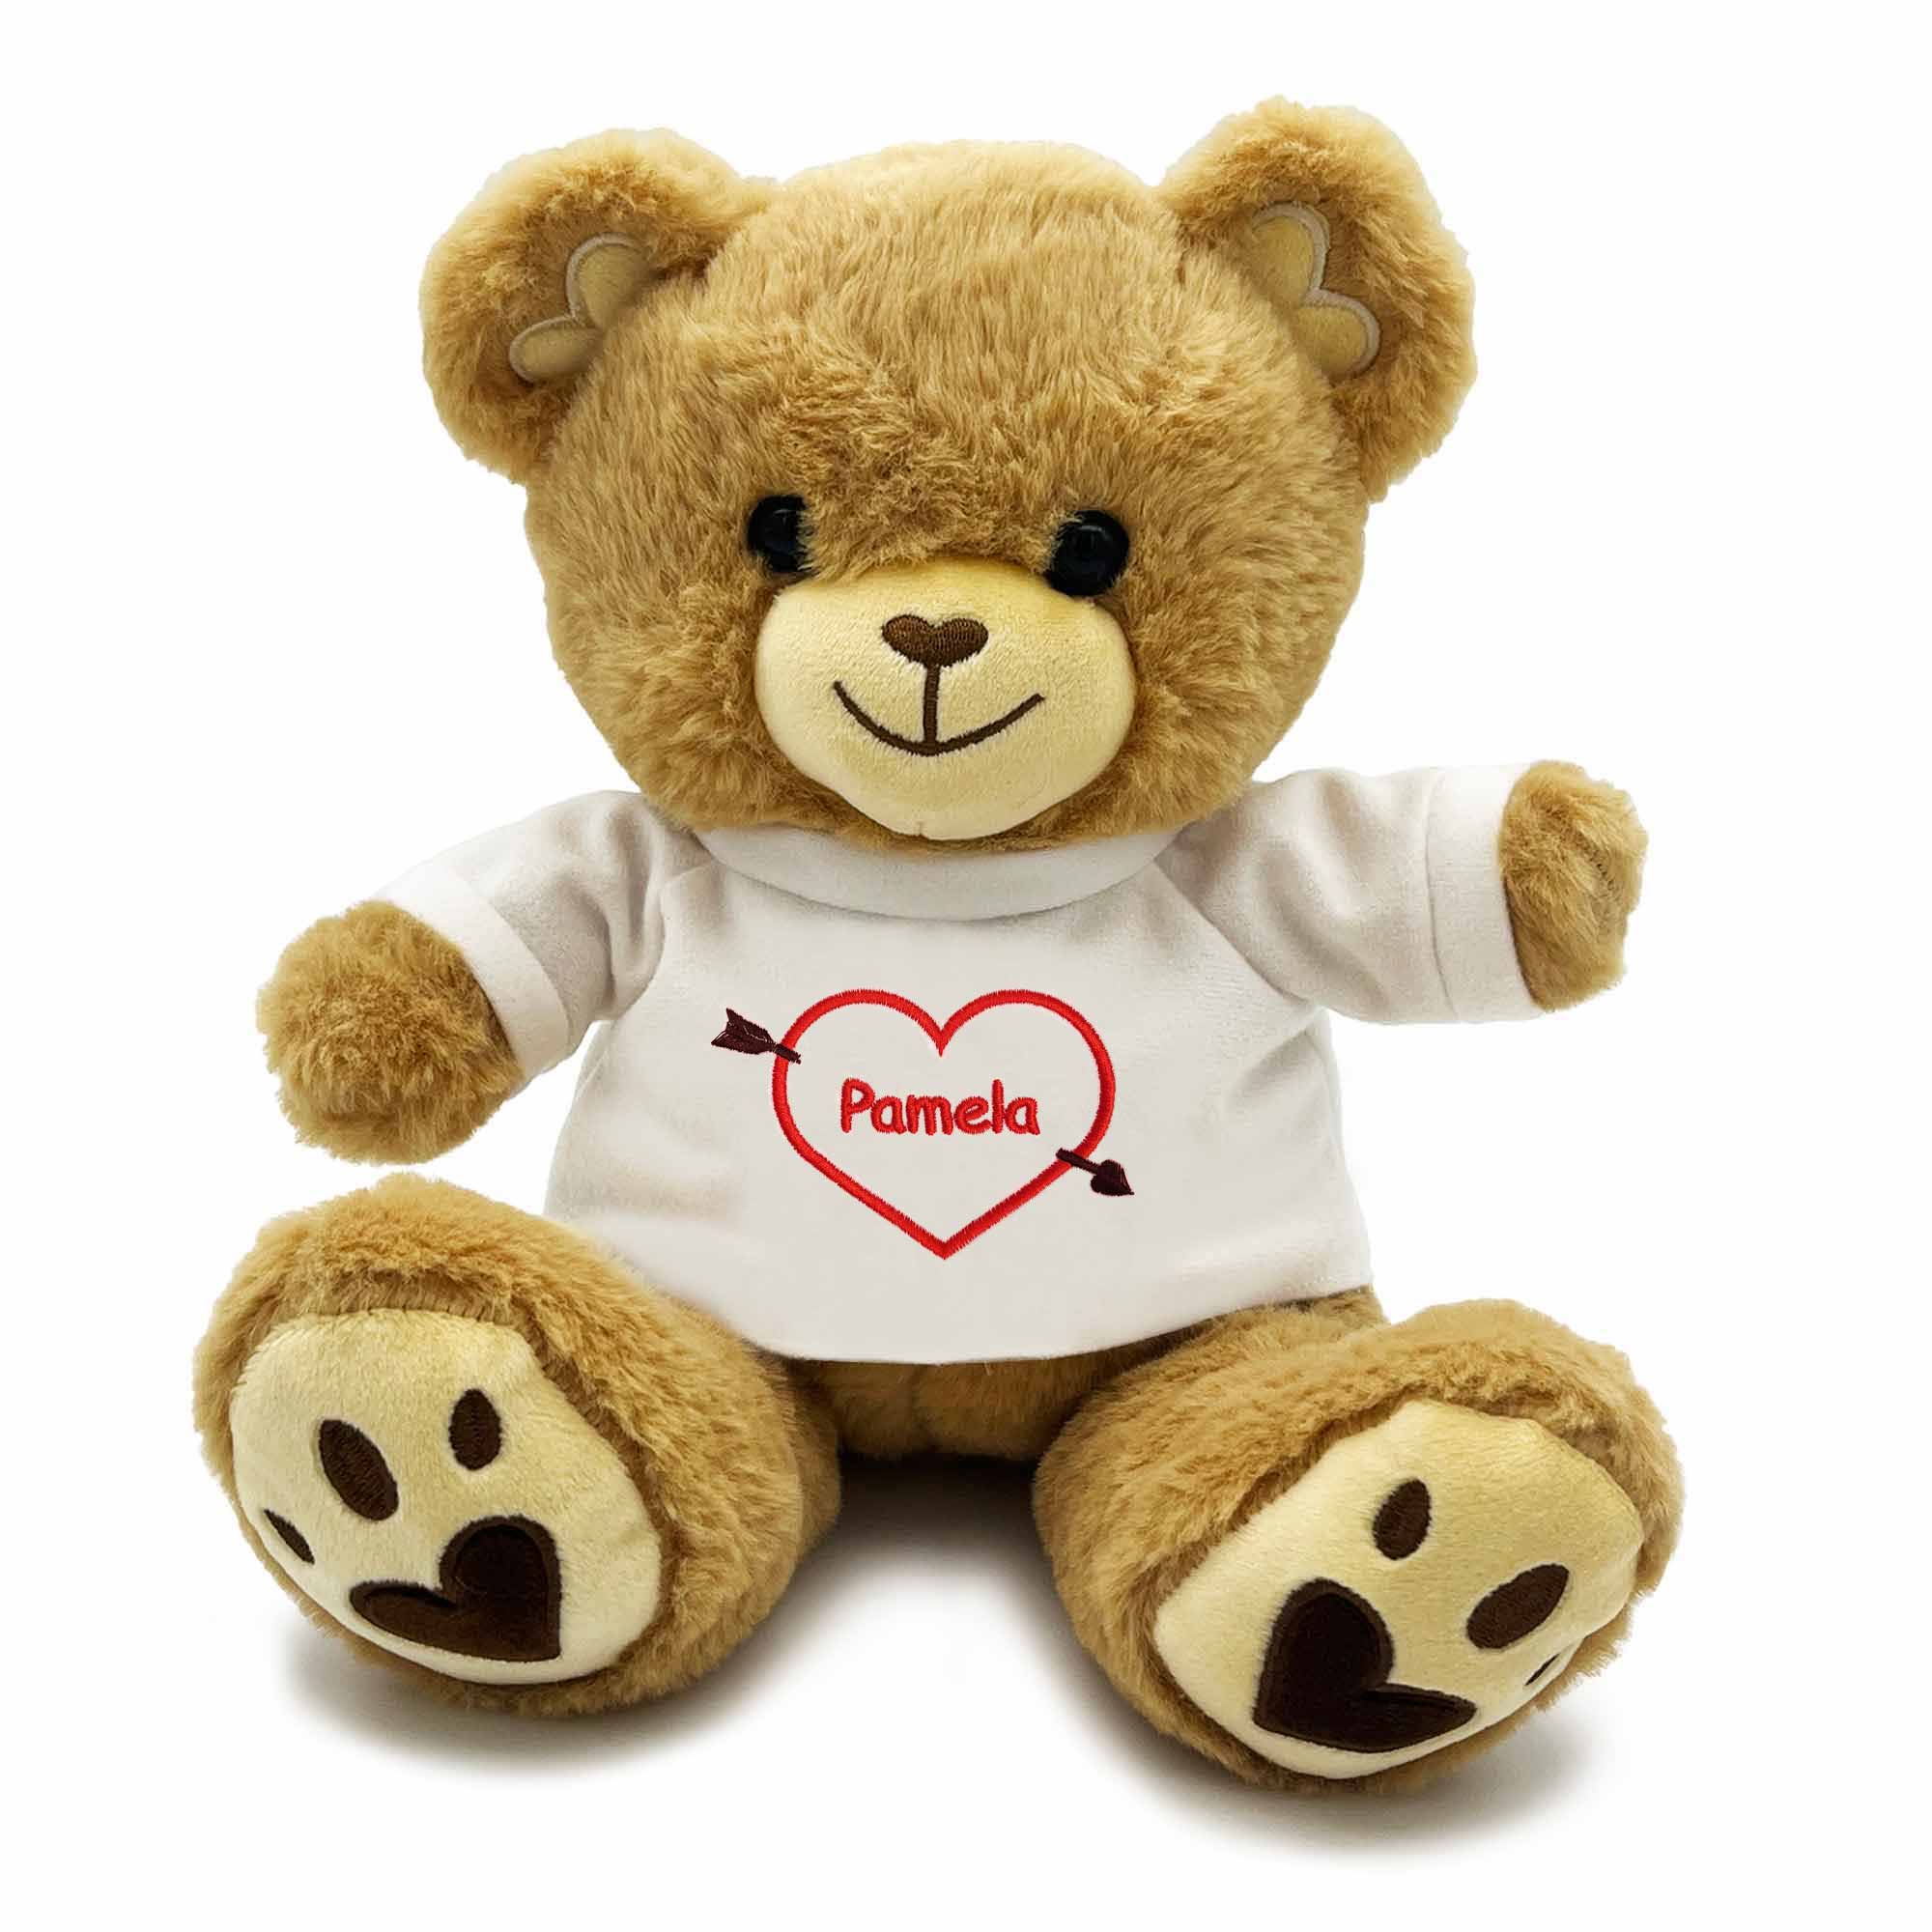 Personalized Heartstruck Arrow Heart Valentine's Teddy Bear - 12"